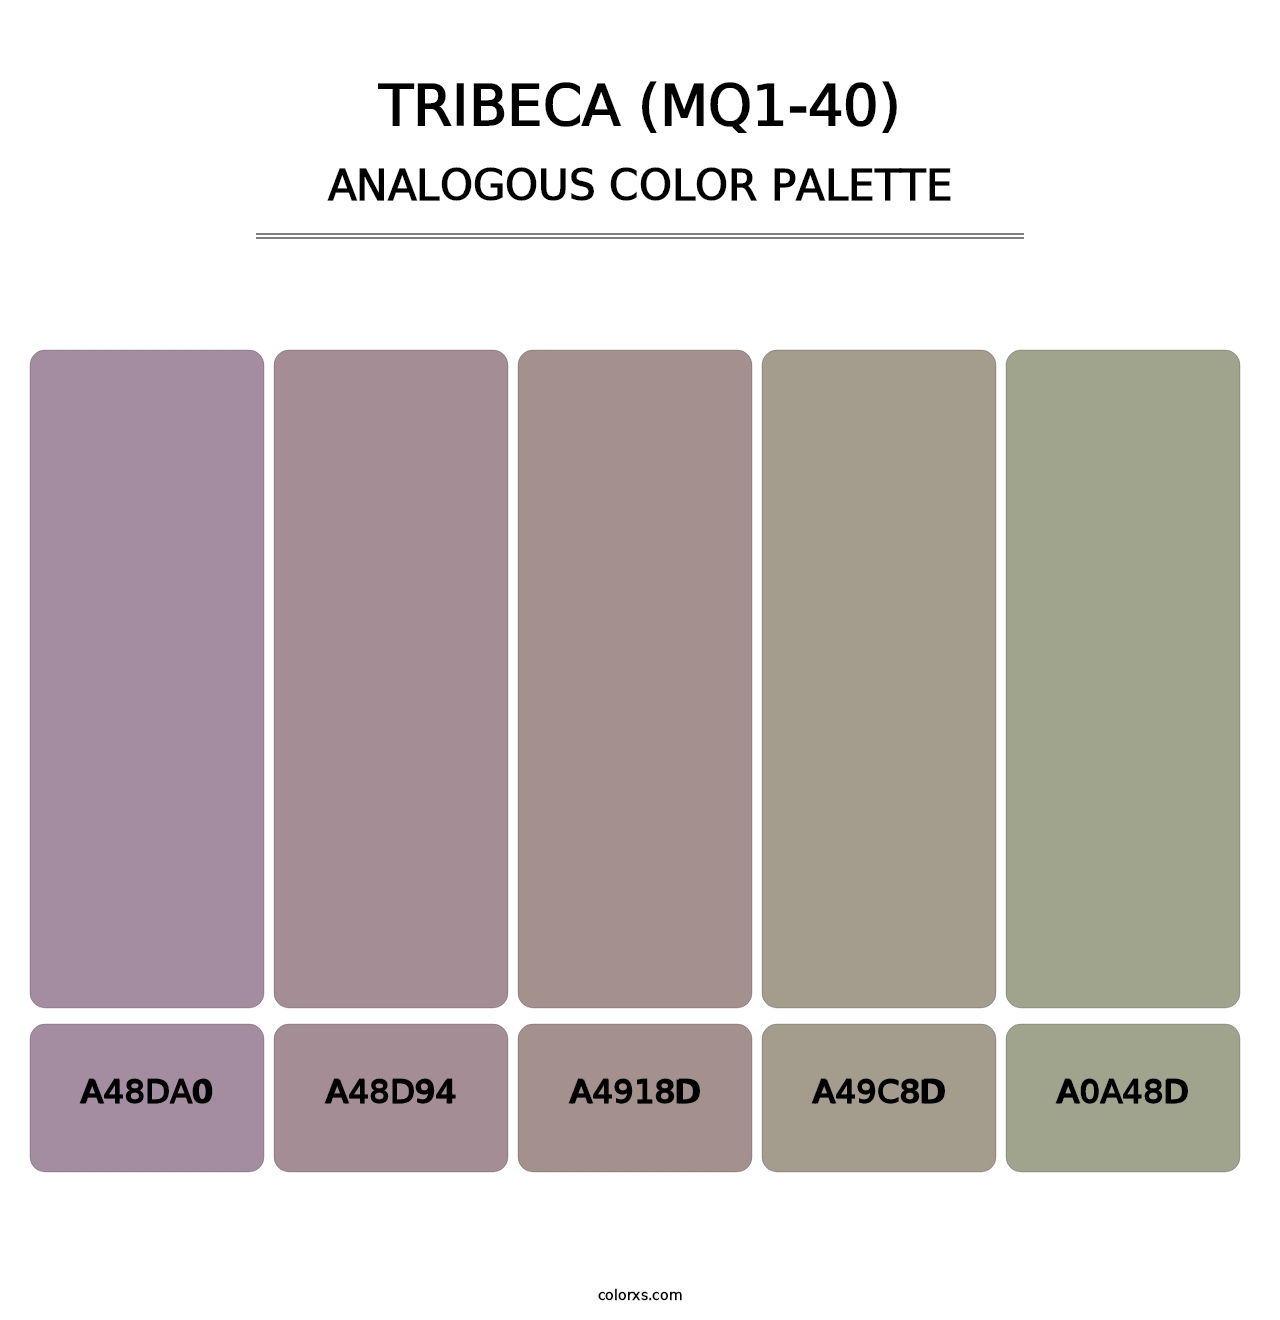 Tribeca (MQ1-40) - Analogous Color Palette